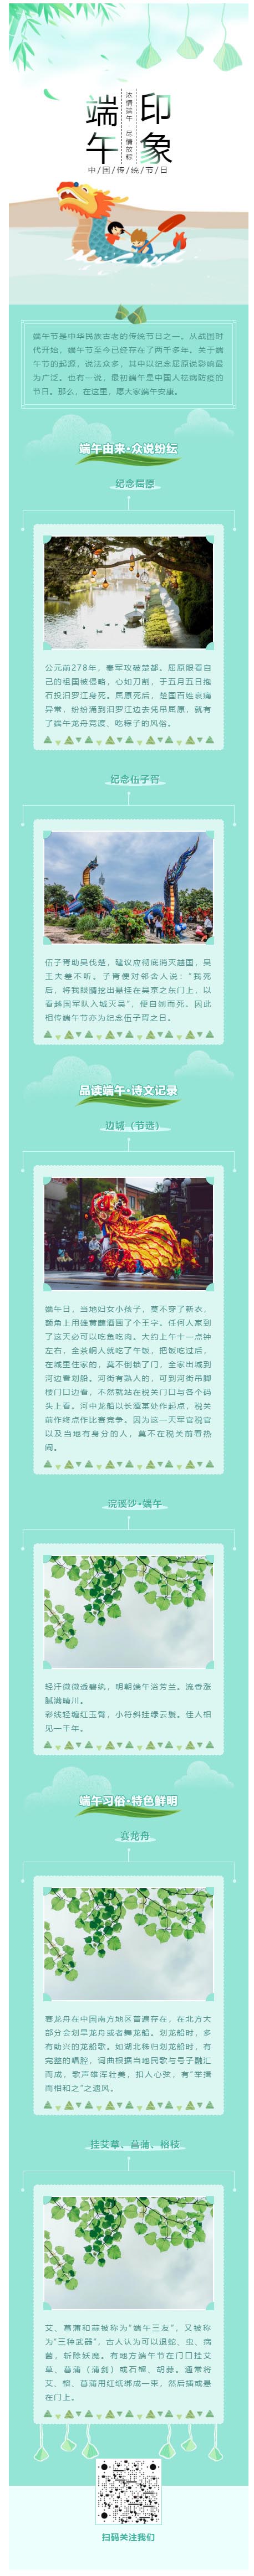 端午节中华民族传统节日之一龙舟粽子微信图文模板推送推文素材